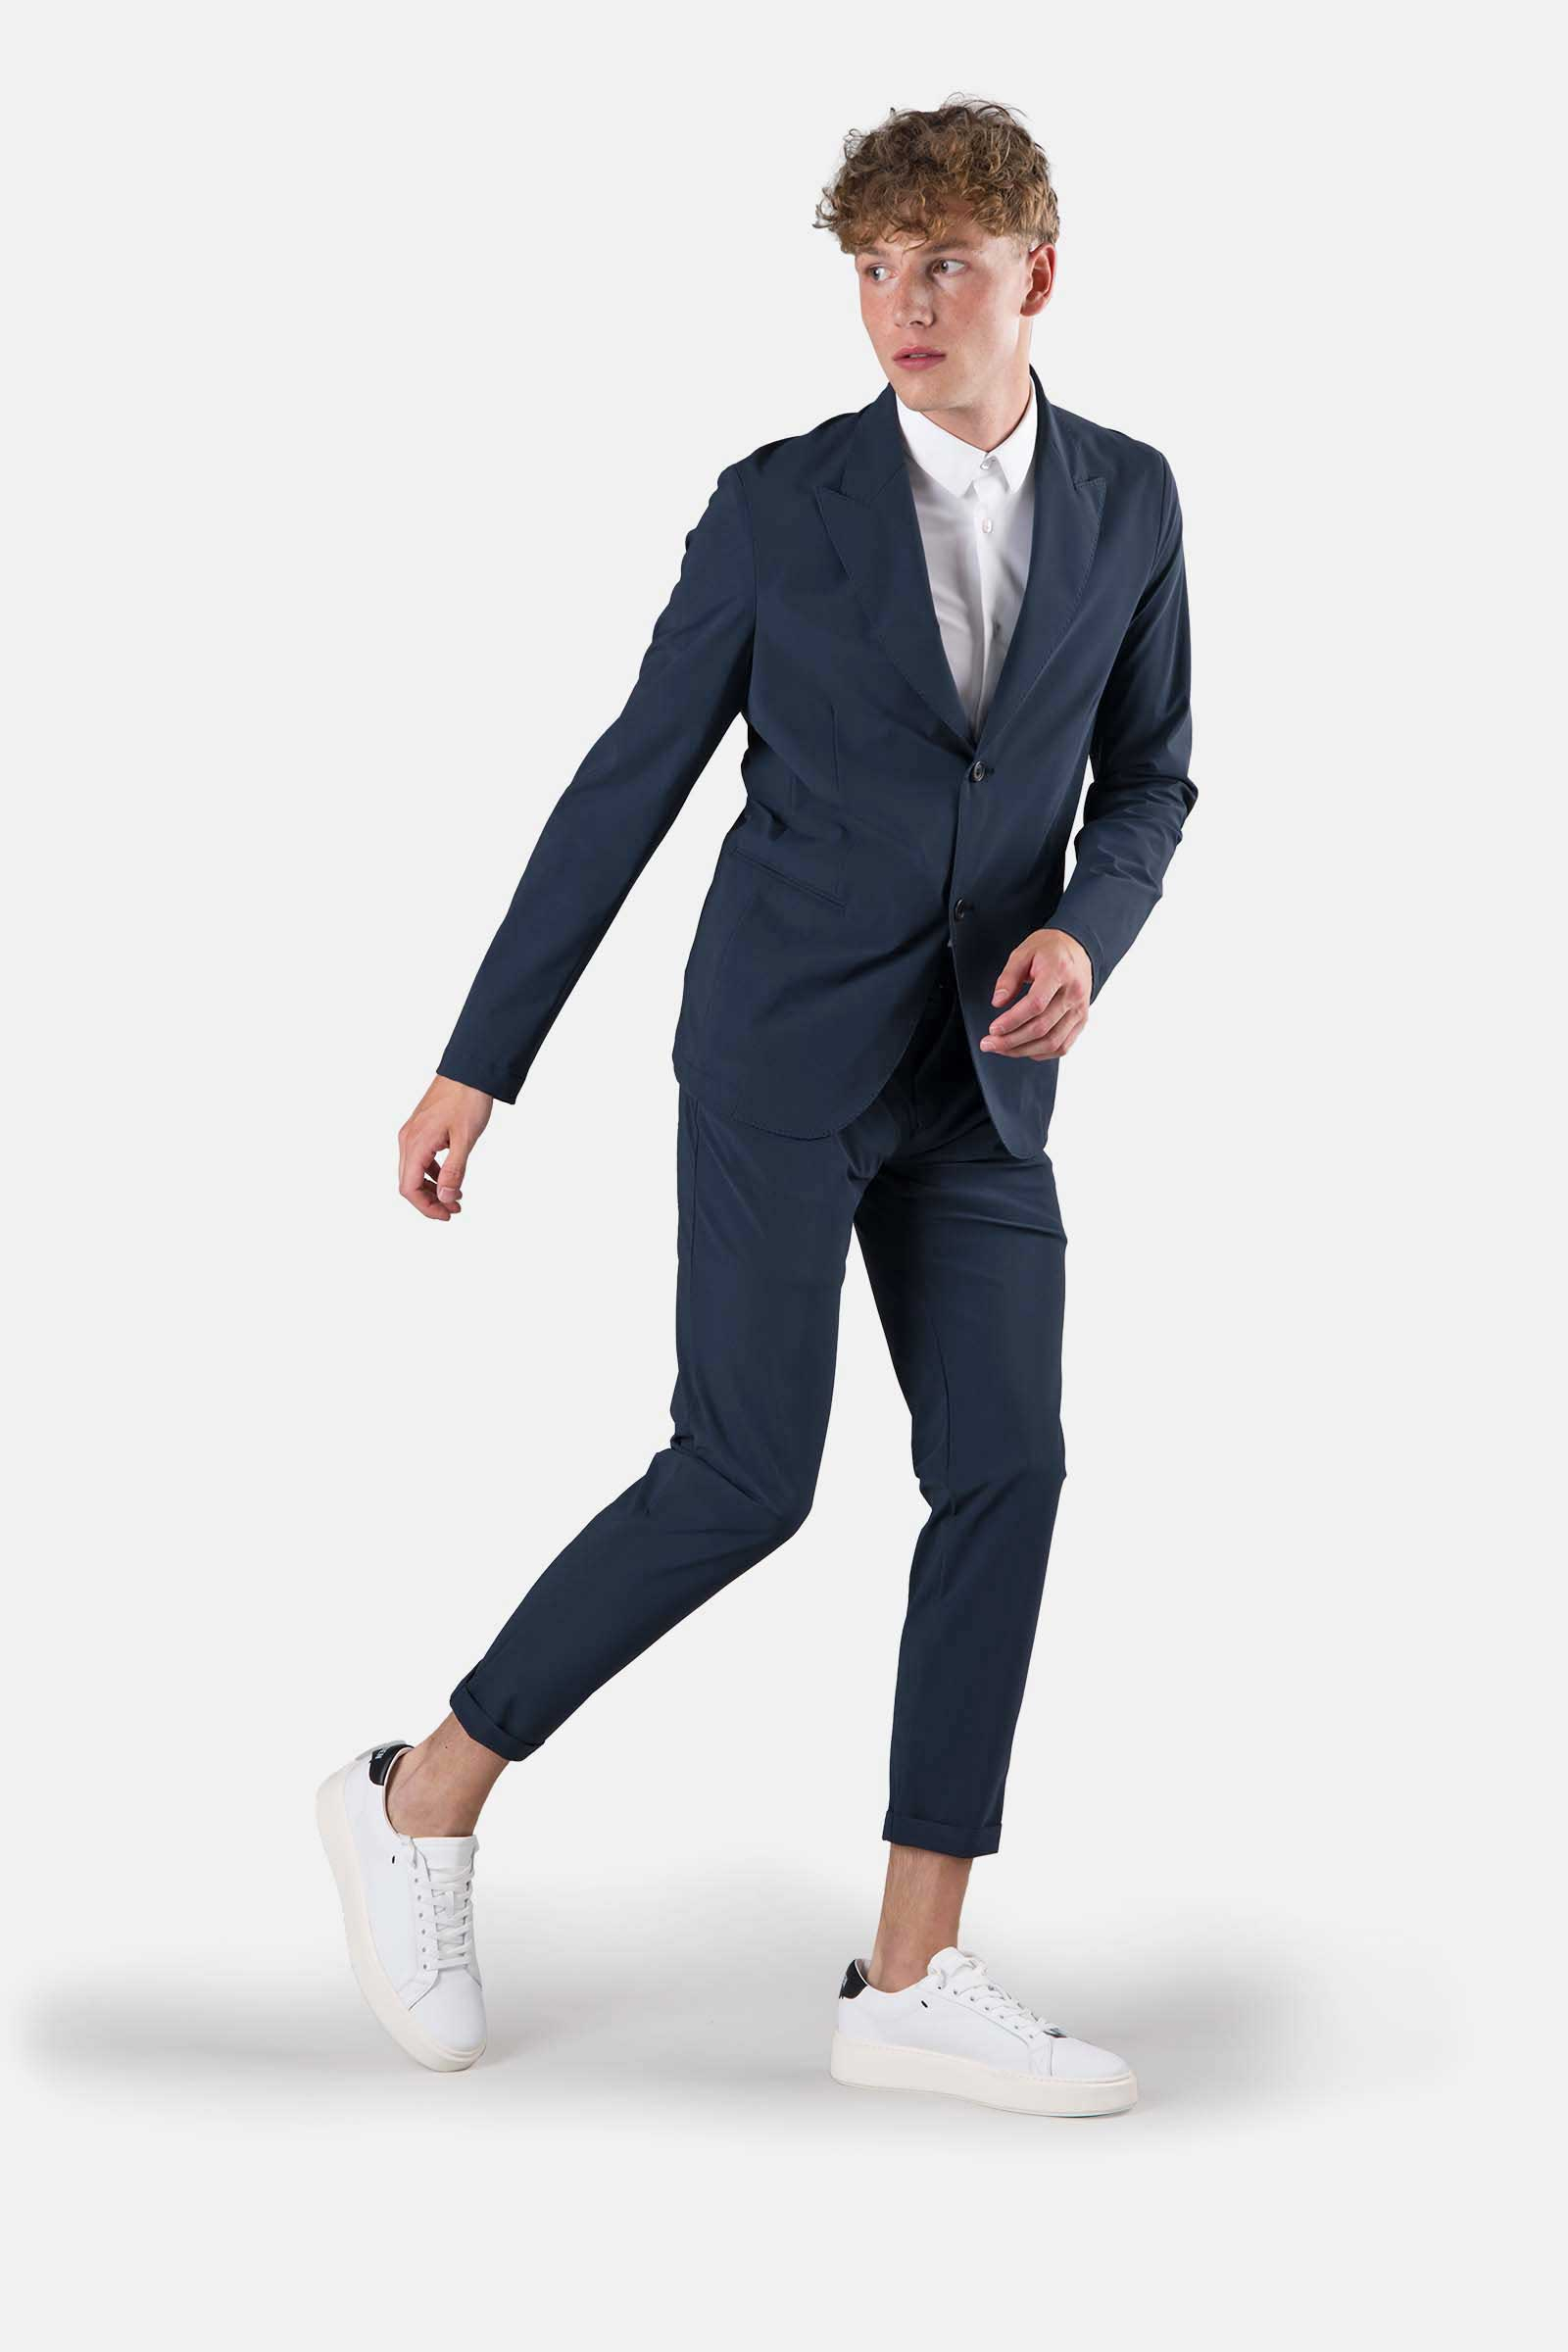 PEAK LAPEL JACKET - BLUE - Hydrogen - Luxury Sportwear